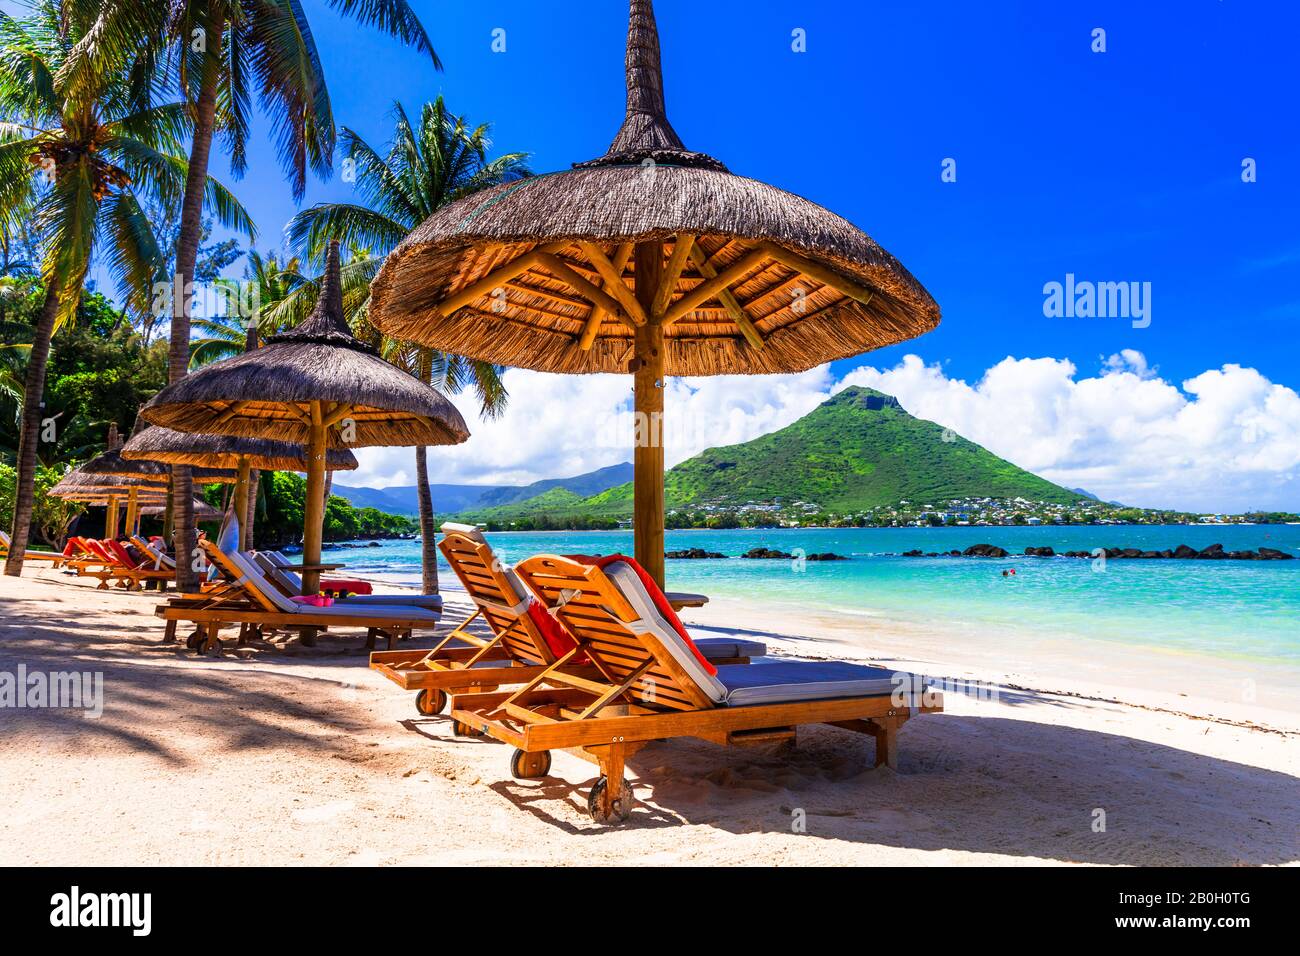 Espléndida isla Mauricio con hermosas playas y resorts de lujo. Playa Flic en Flac Foto de stock